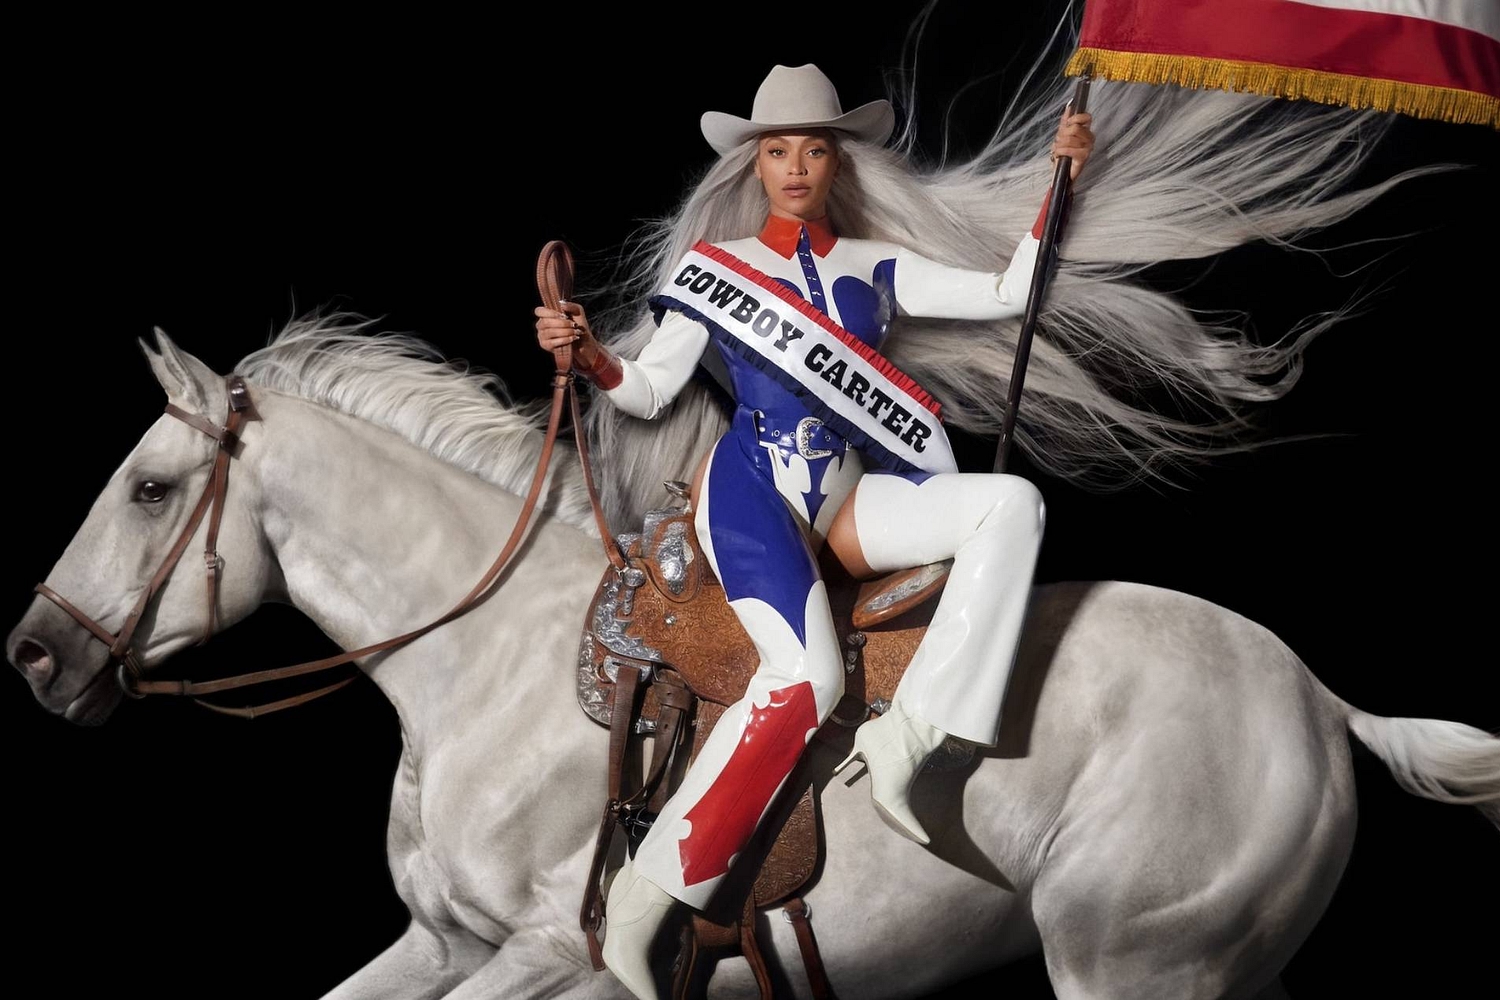 Beyoncé unveils details of ‘Renaissance Act II’ new country album ‘Cowboy Carter’